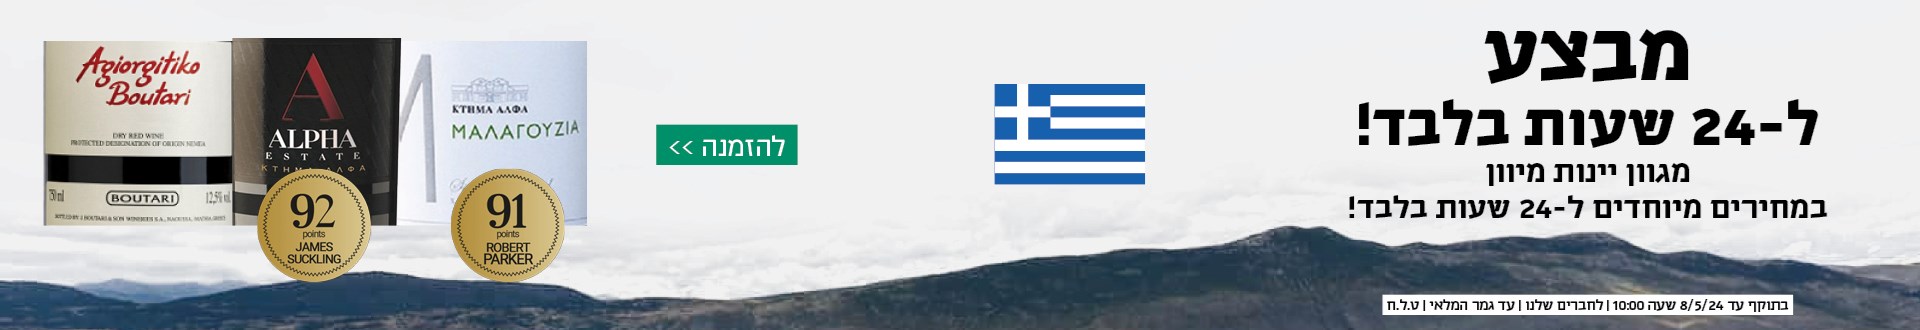 באנר - מבצע 24 שעות יוון